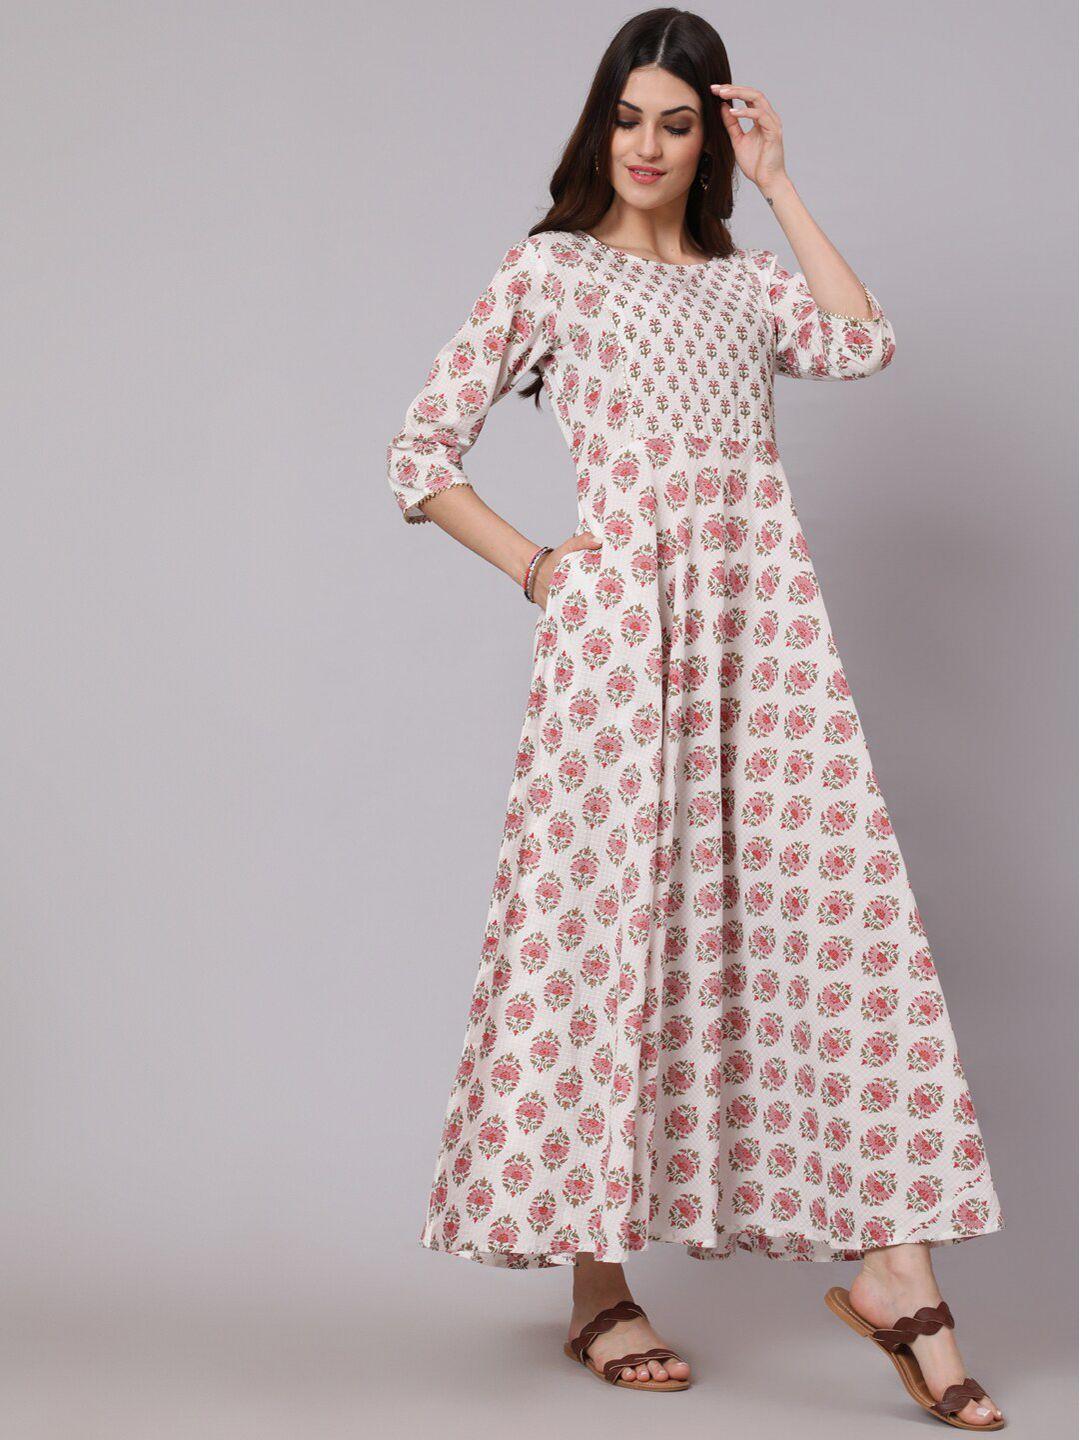 nayo white & pink ethnic motifs ethnic maxi dress